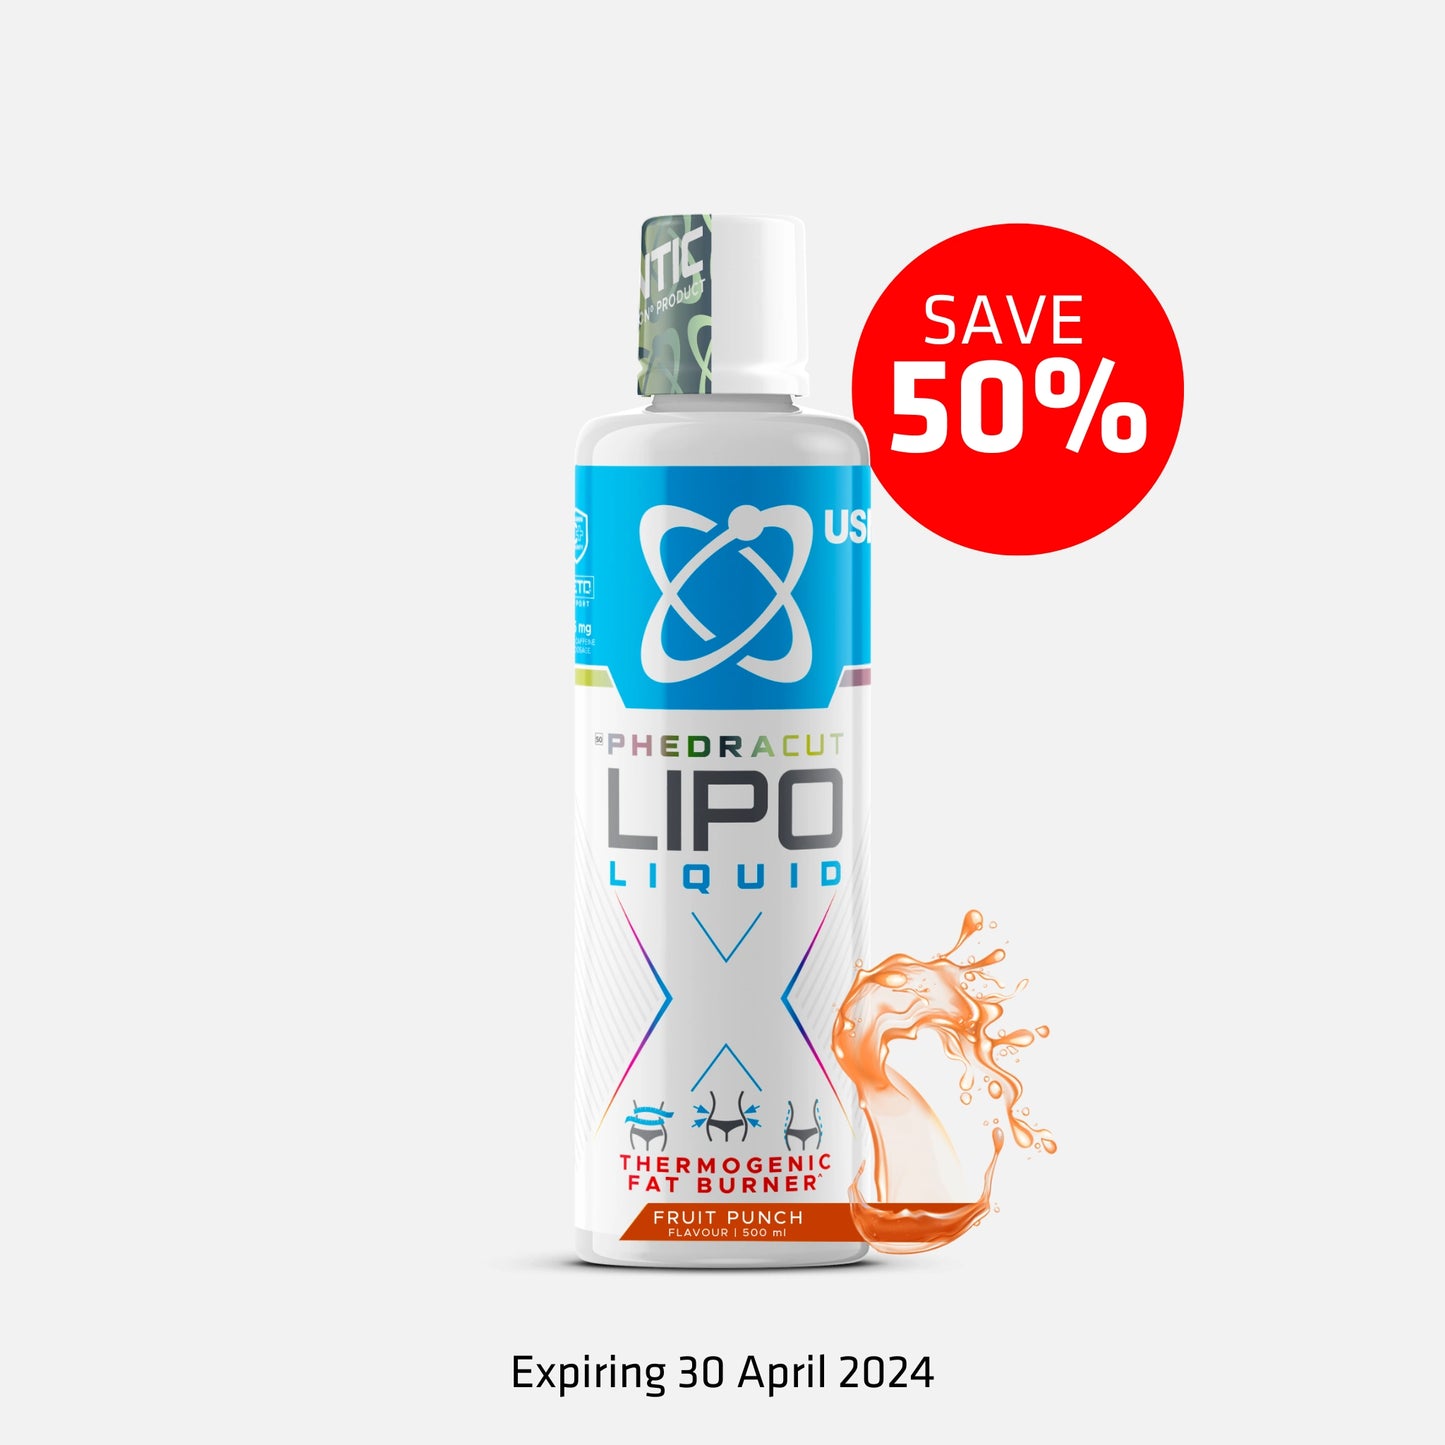 Phedra Cut Lipo X Liquid (500 ml)